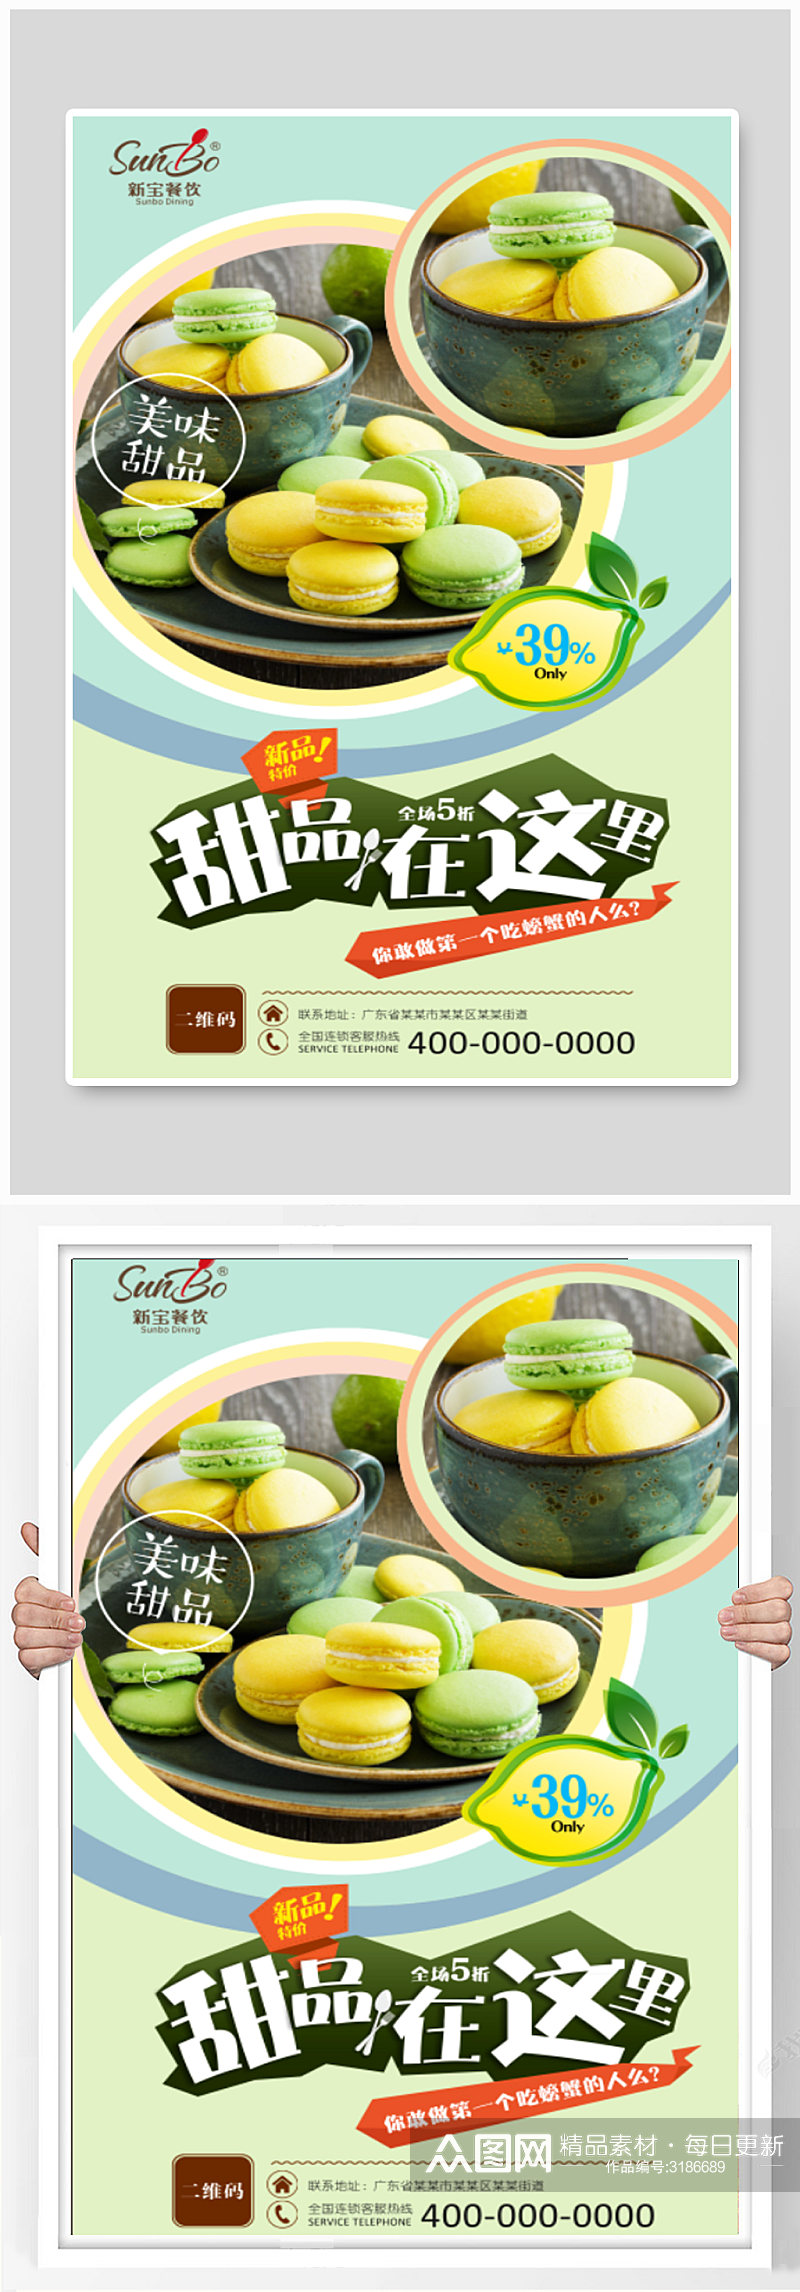 甜品店马卡龙美食促销海报设计素材